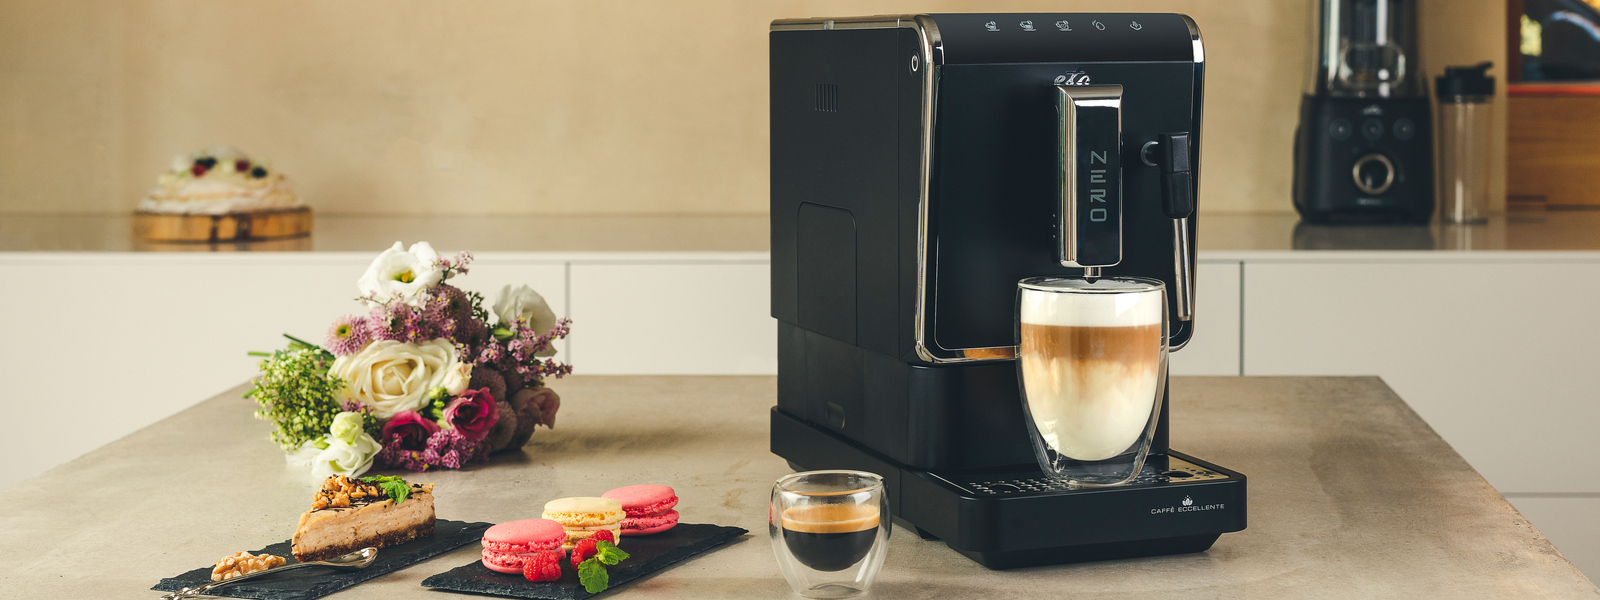 Letom svetom kávy s kávovarom ETA Nero: Ako pripraviť cappuccino, café latté či espresso macchiato?